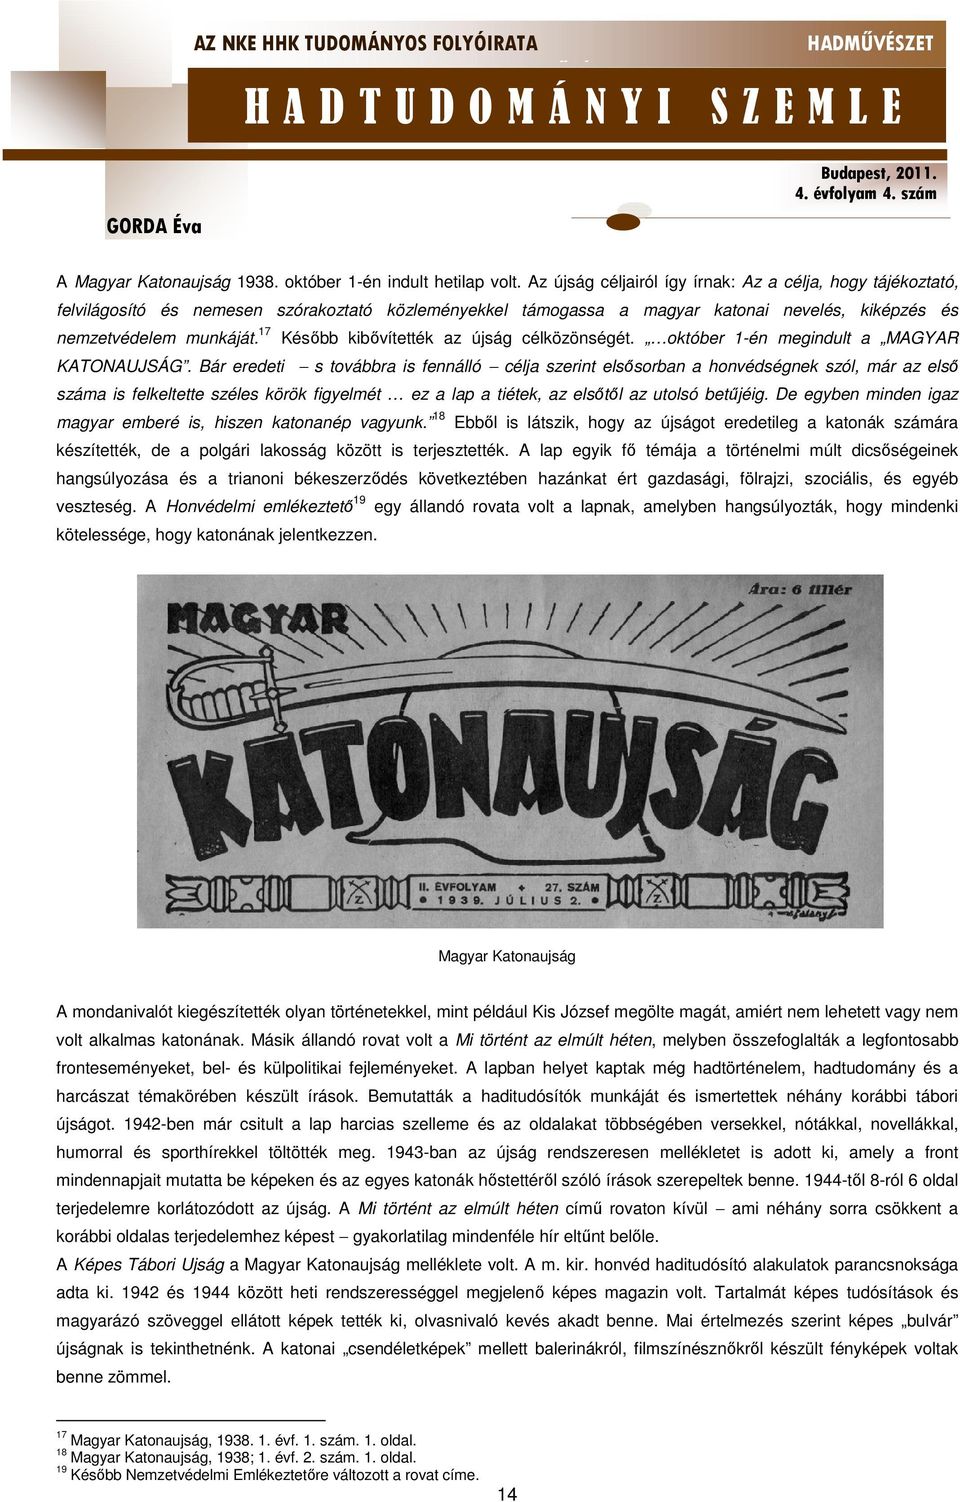 17 Később kibővítették az újság célközönségét. október 1-én megindult a MAGYAR KATONAUJSÁG.